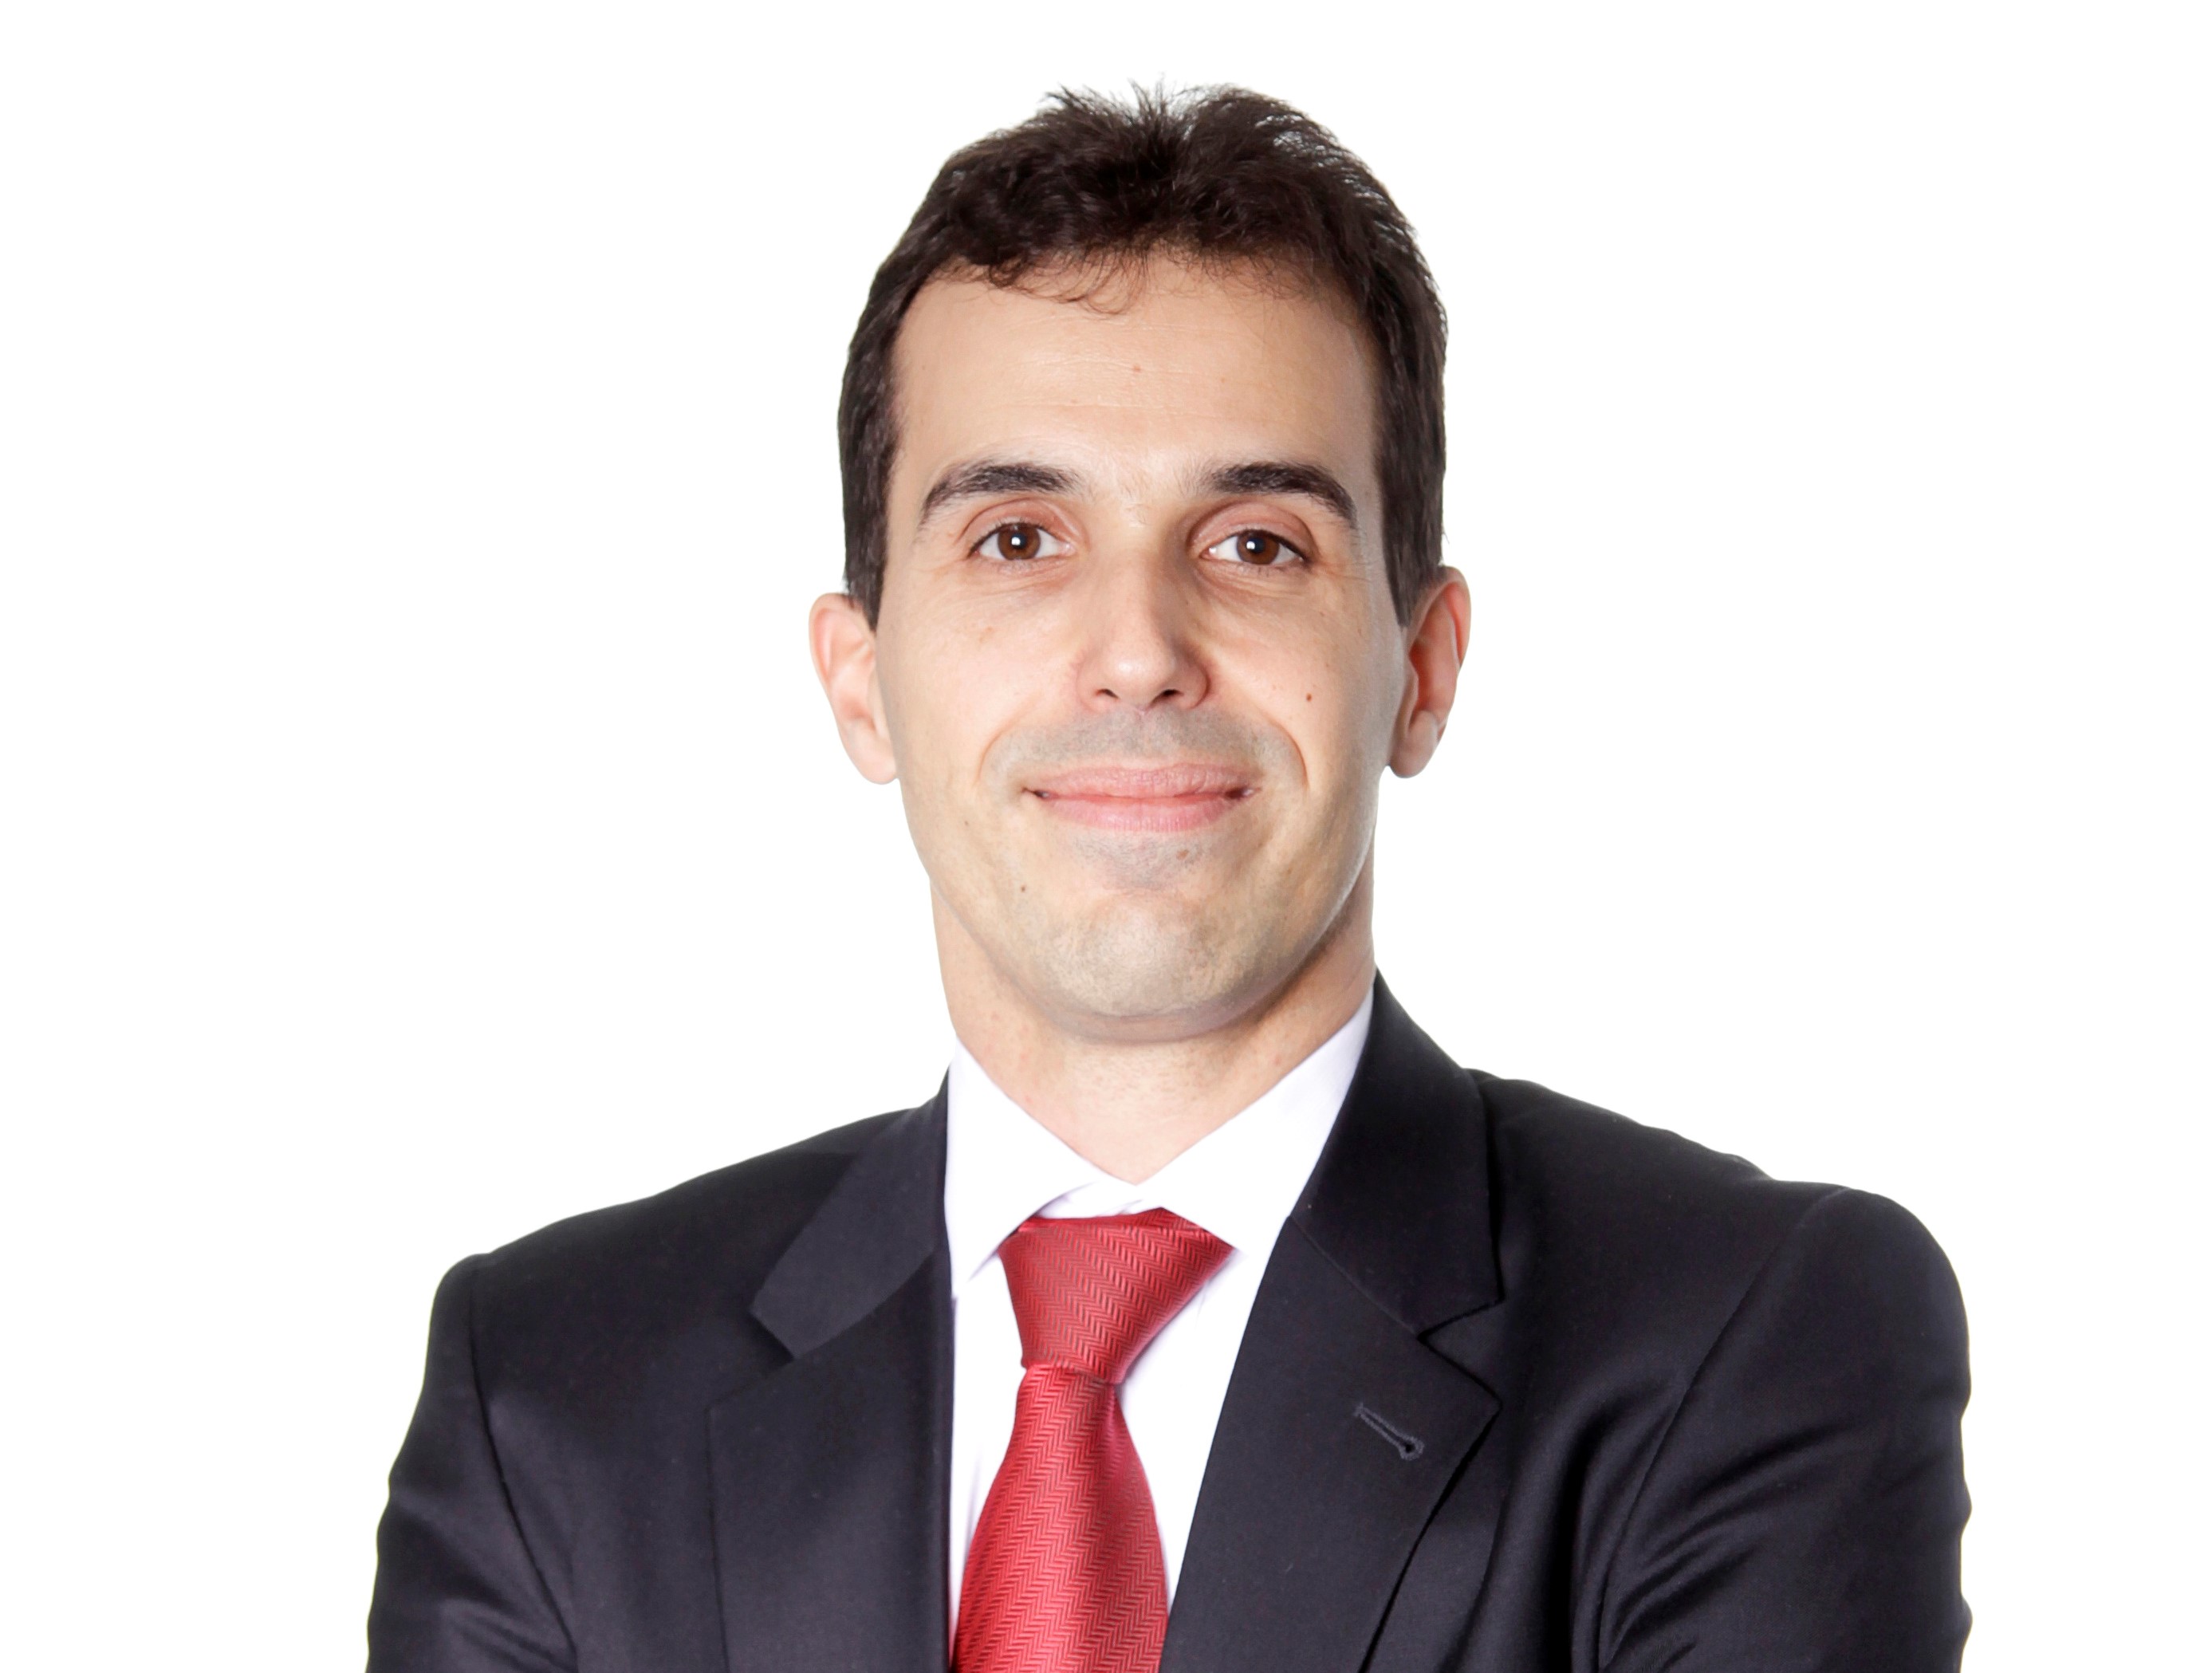 Paulo Eduardo Brugugnoli é CTO global do gA, companhia global de tecnologia que utiliza plataformas digitais e serviços de transformação para capacitar grandes empresas